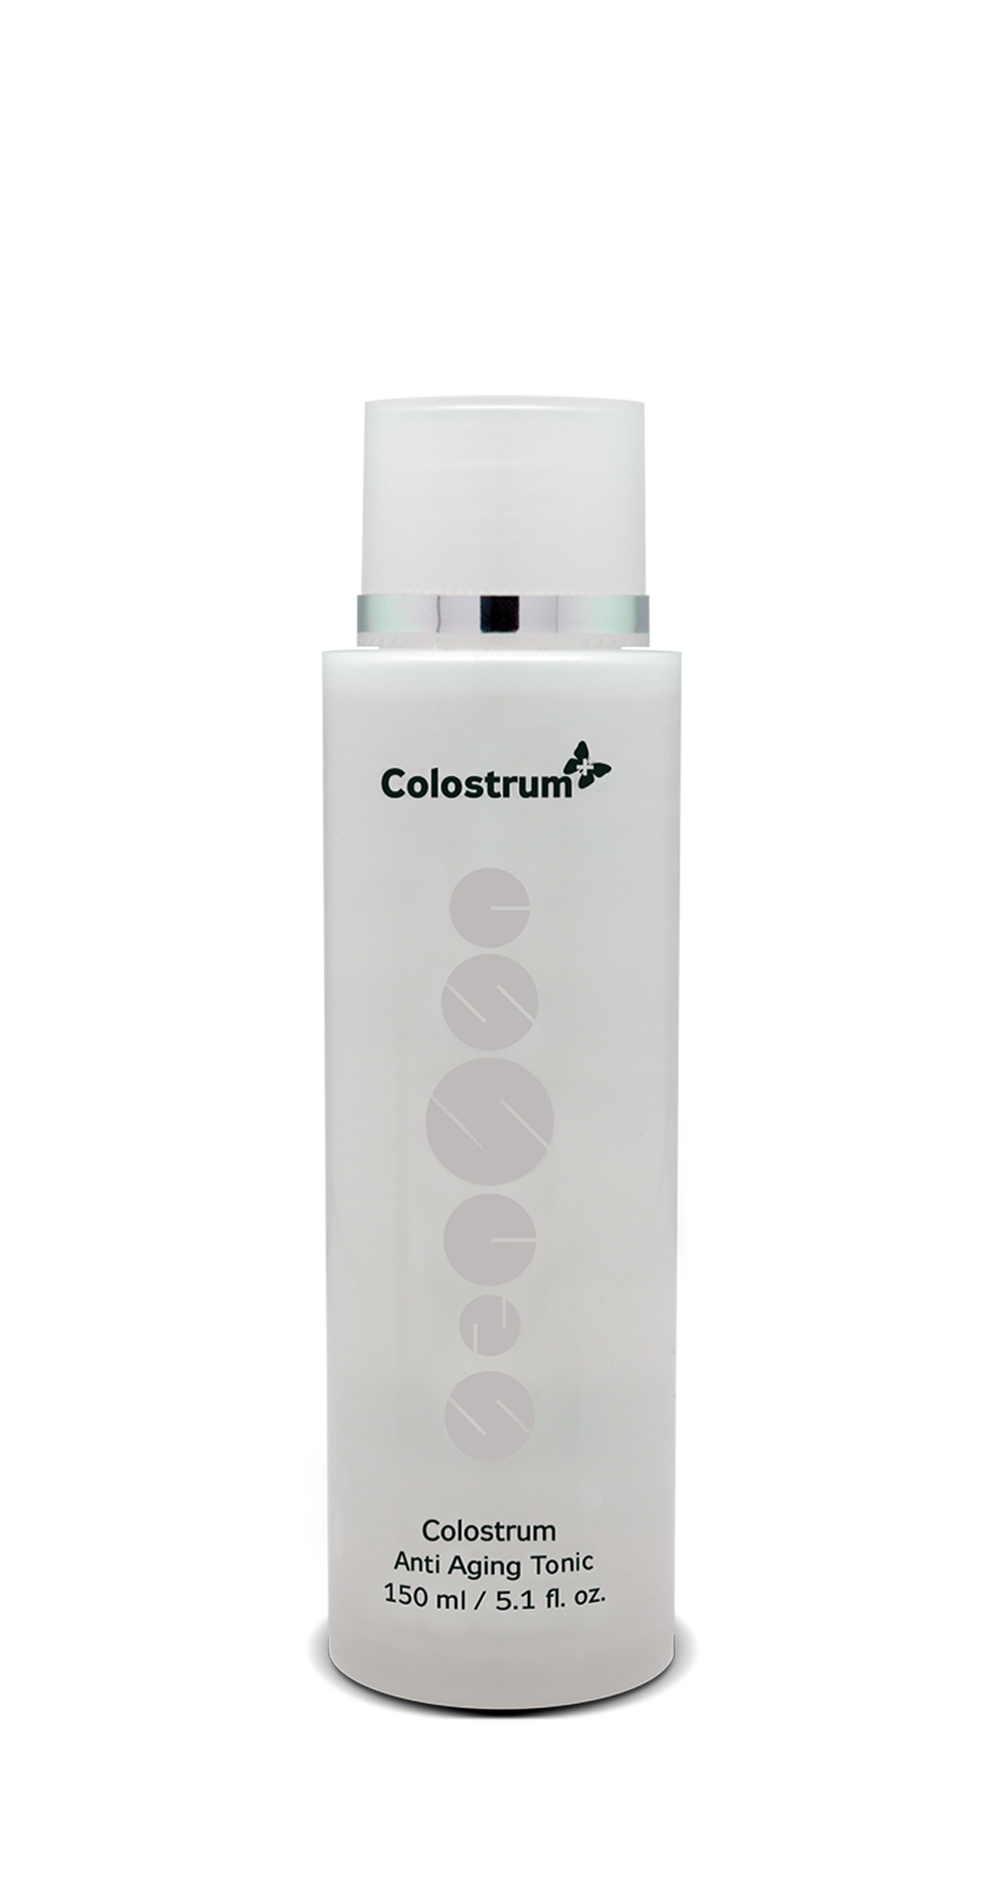 Anti Aging pleťové tonikum Colostrum+ parfumované